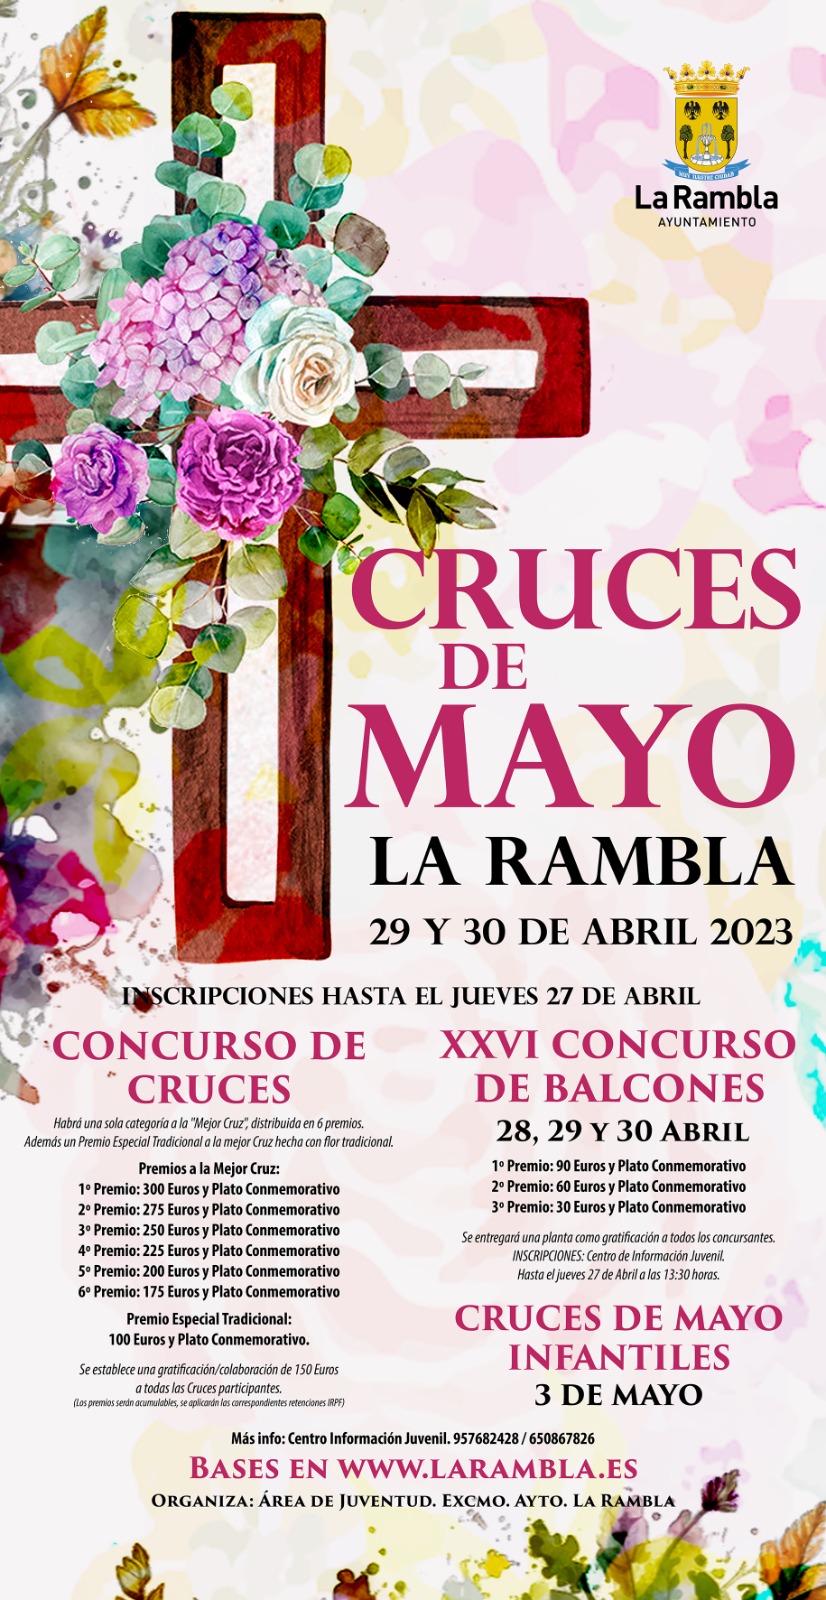 - El 3 de mayo, día no lectivo en La Rambla, tendrán lugar las Cruces Infantiles que saldrán de la calle Los Prietos - Este año se cumple la 26 edición del Concurso de Balcones